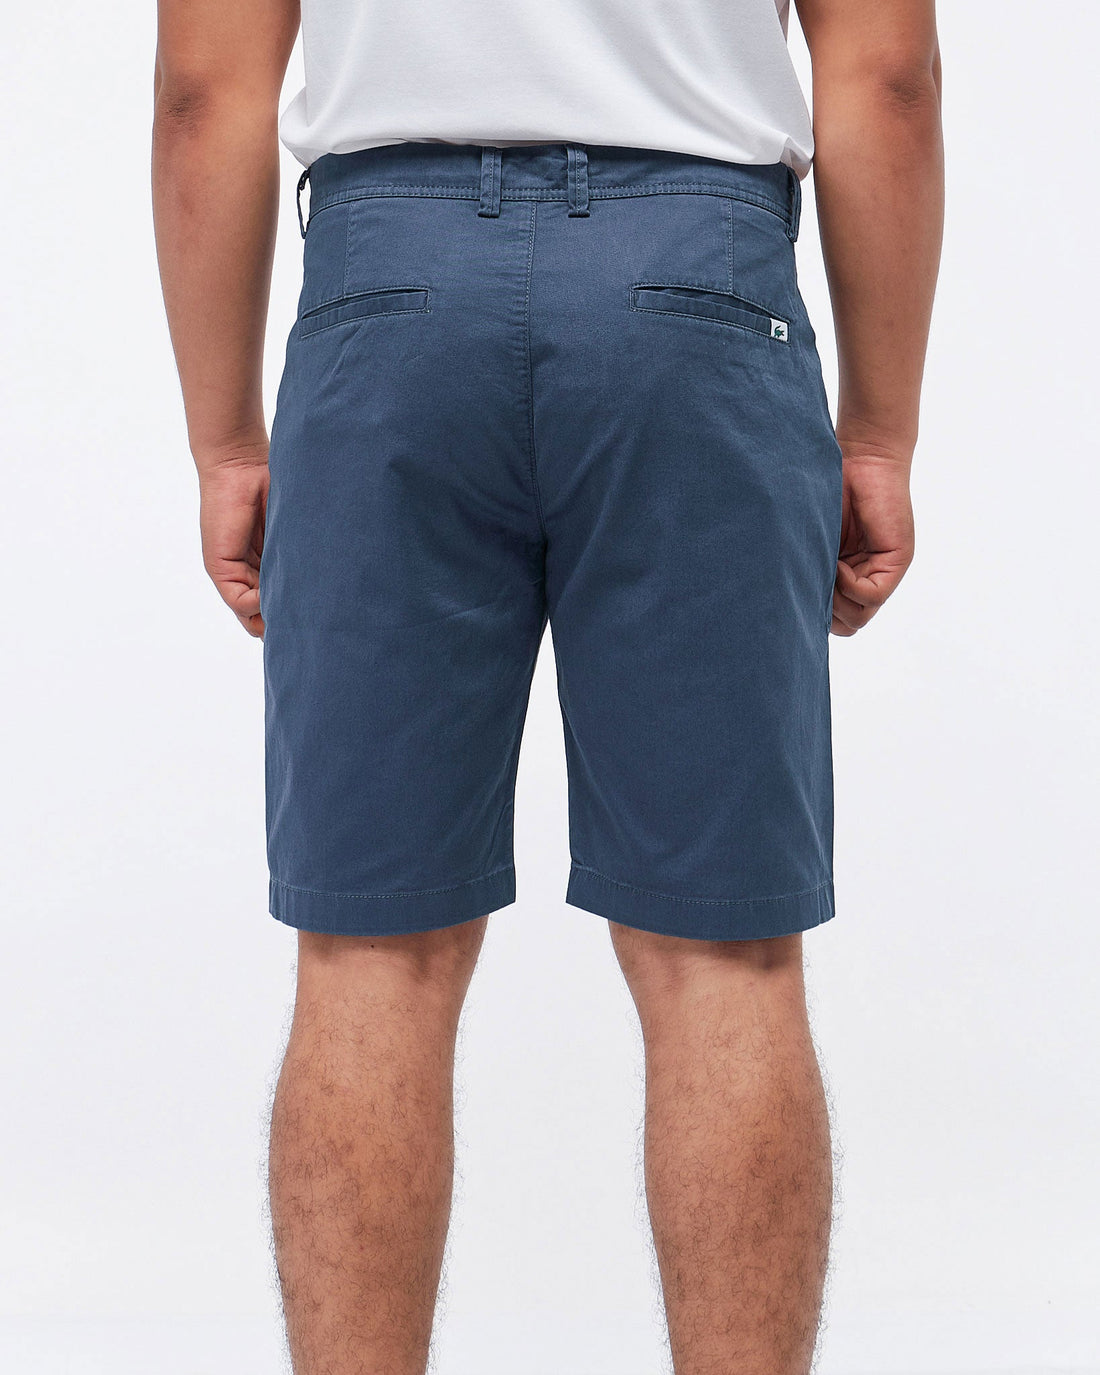 MOI OUTFIT-Soft Plain Color Men Shorts 16.90